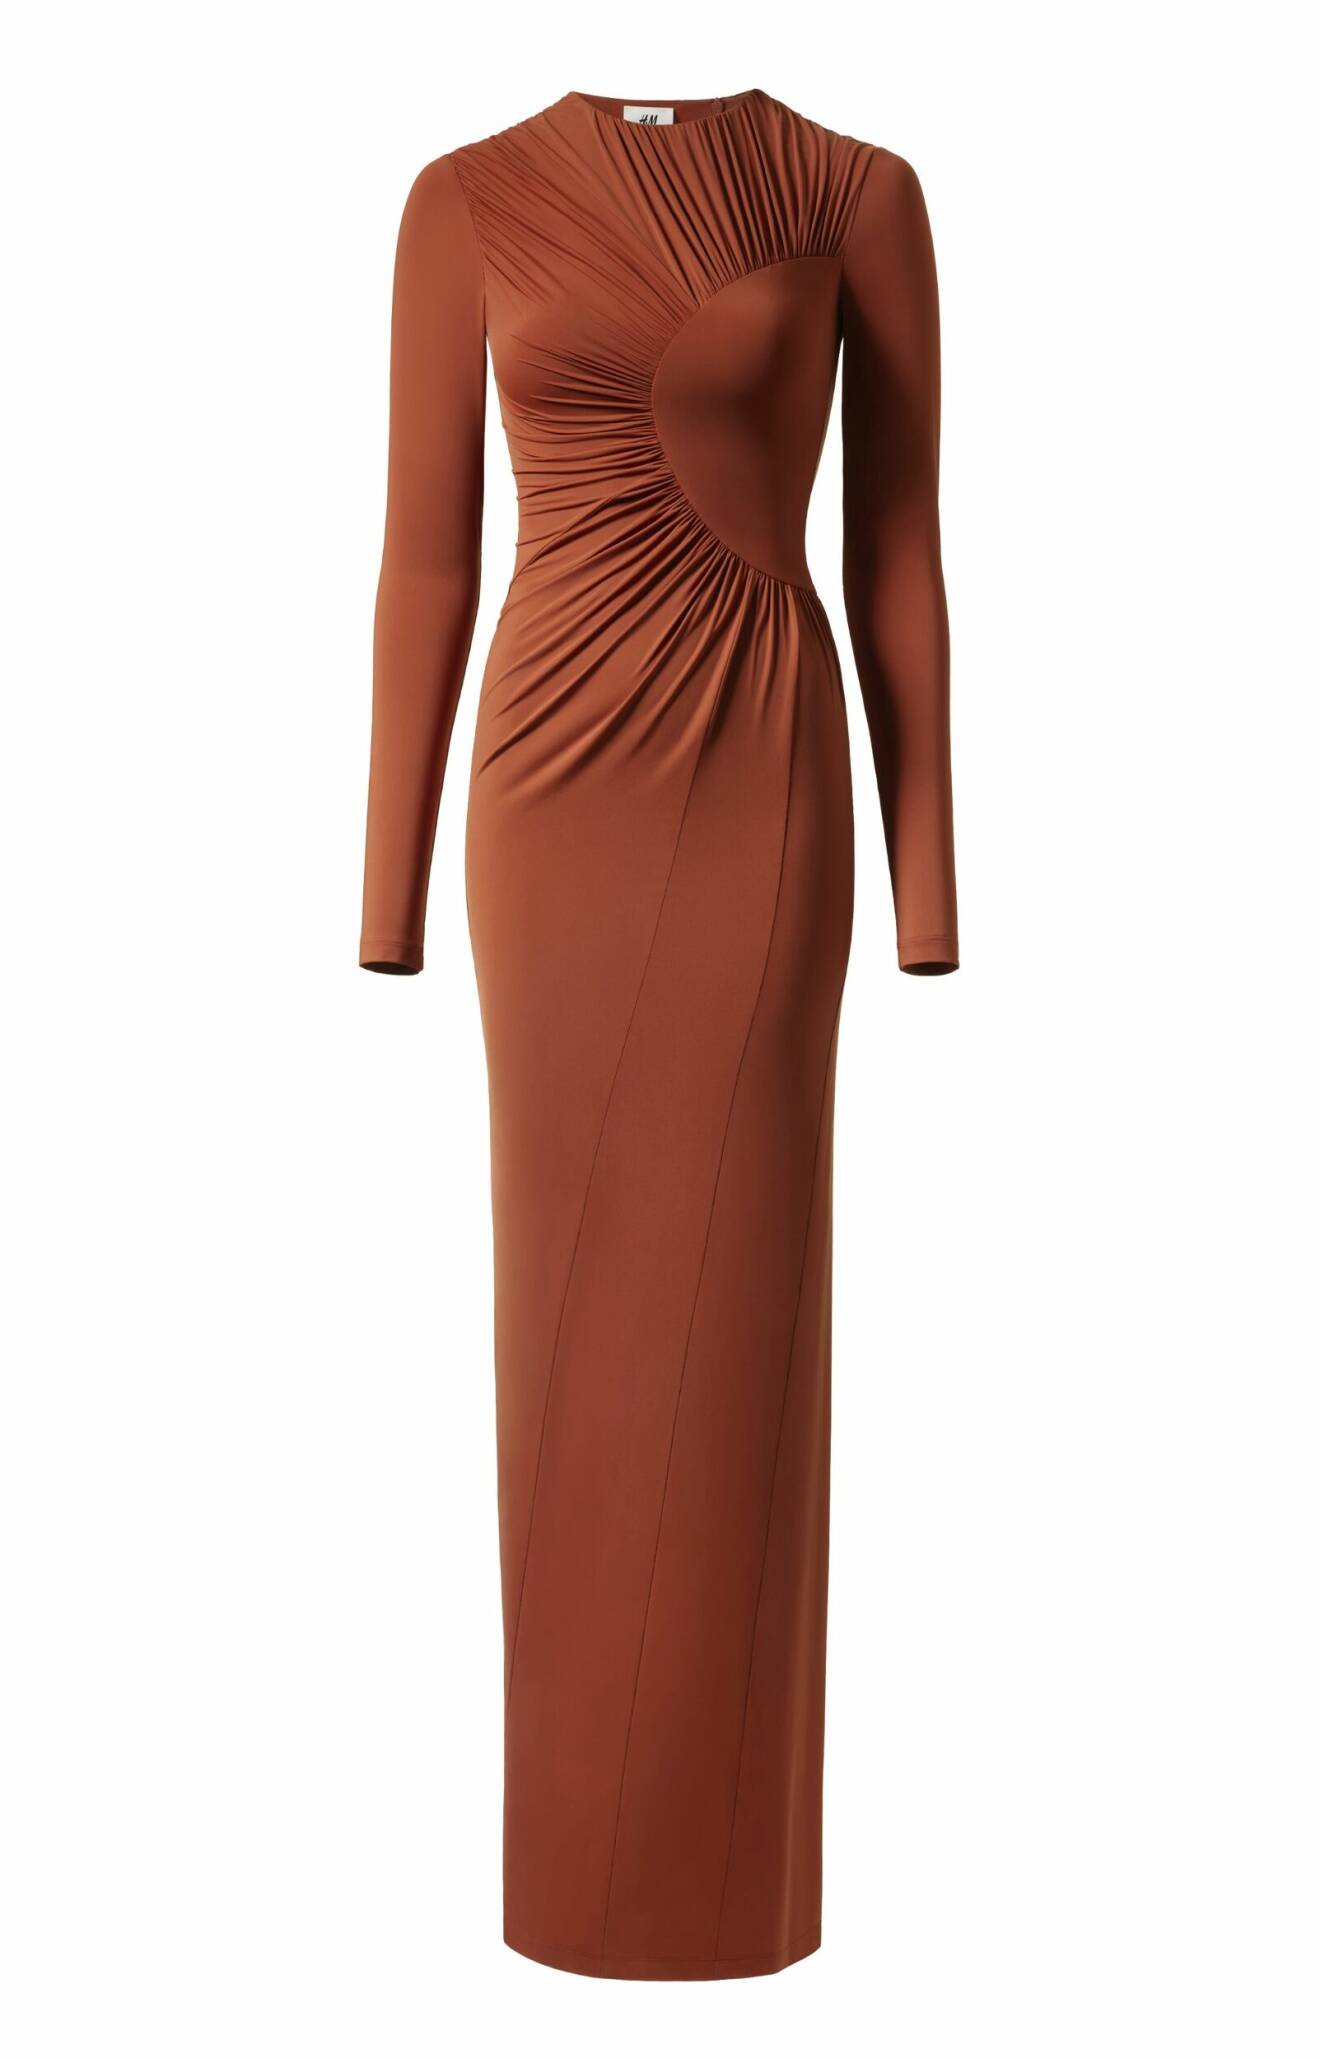 H&M Studio SS24 Röd golvlång klänning